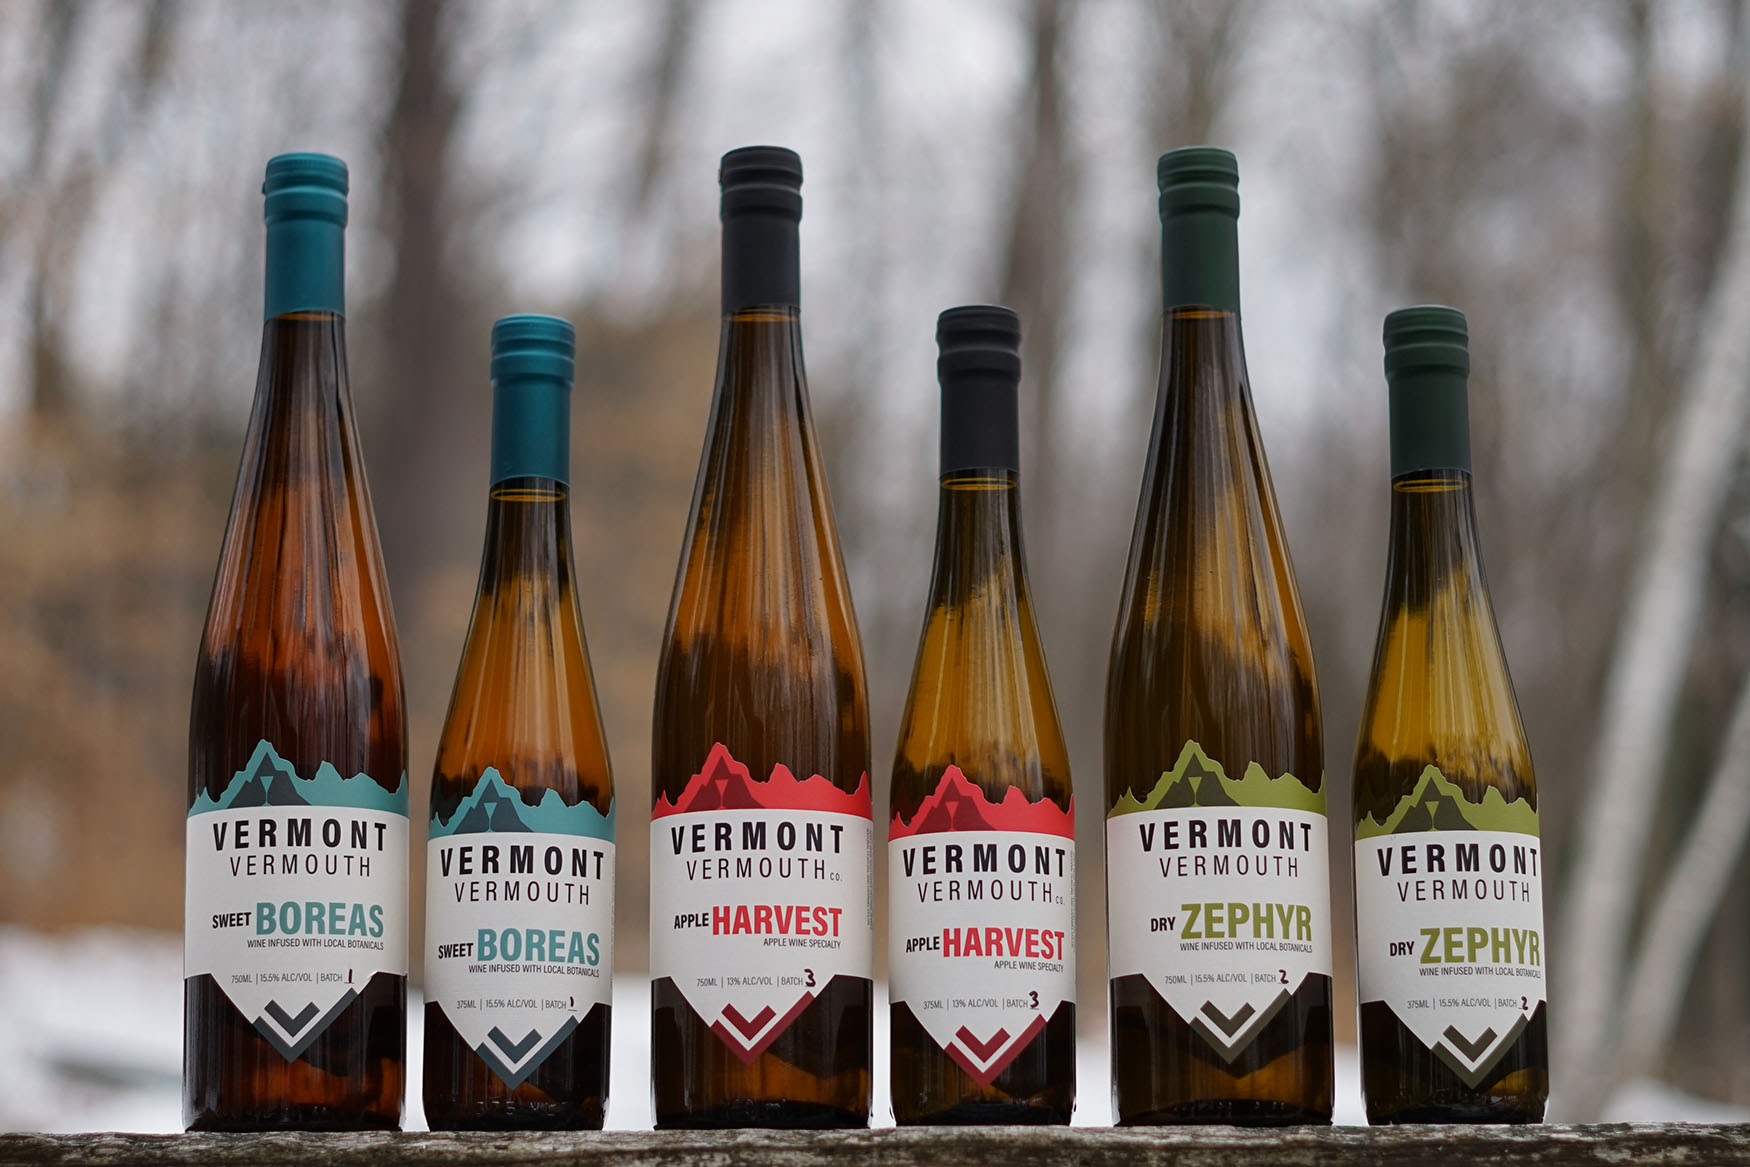 vermont vermouth bottles